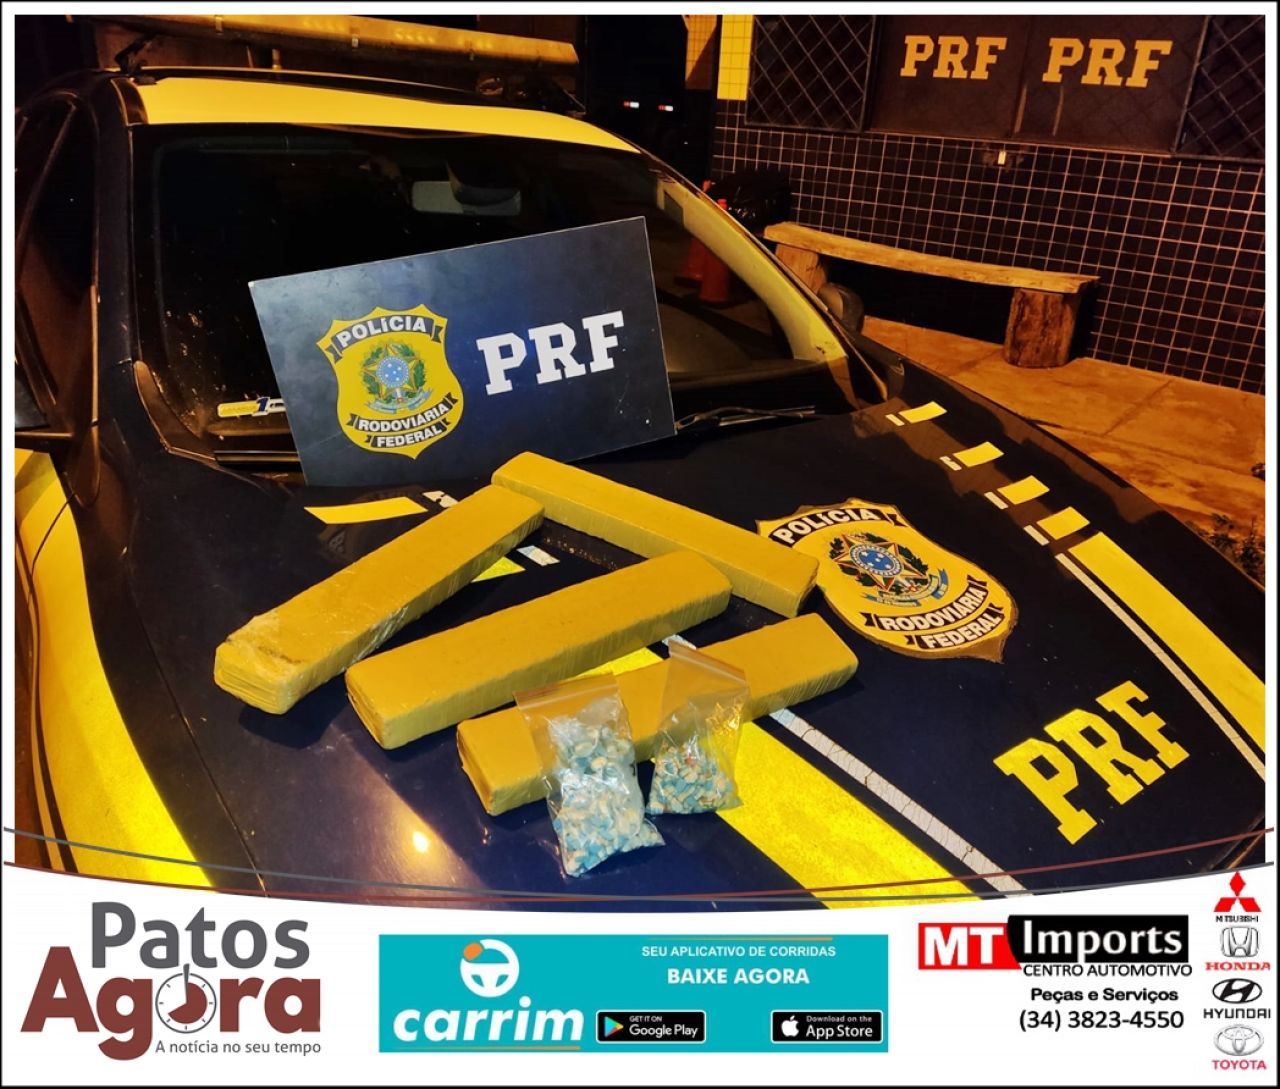 Patos de Minas: PRF apreende mochila com 4 tabletes de maconha e com 200 comprimidos de ecstasy